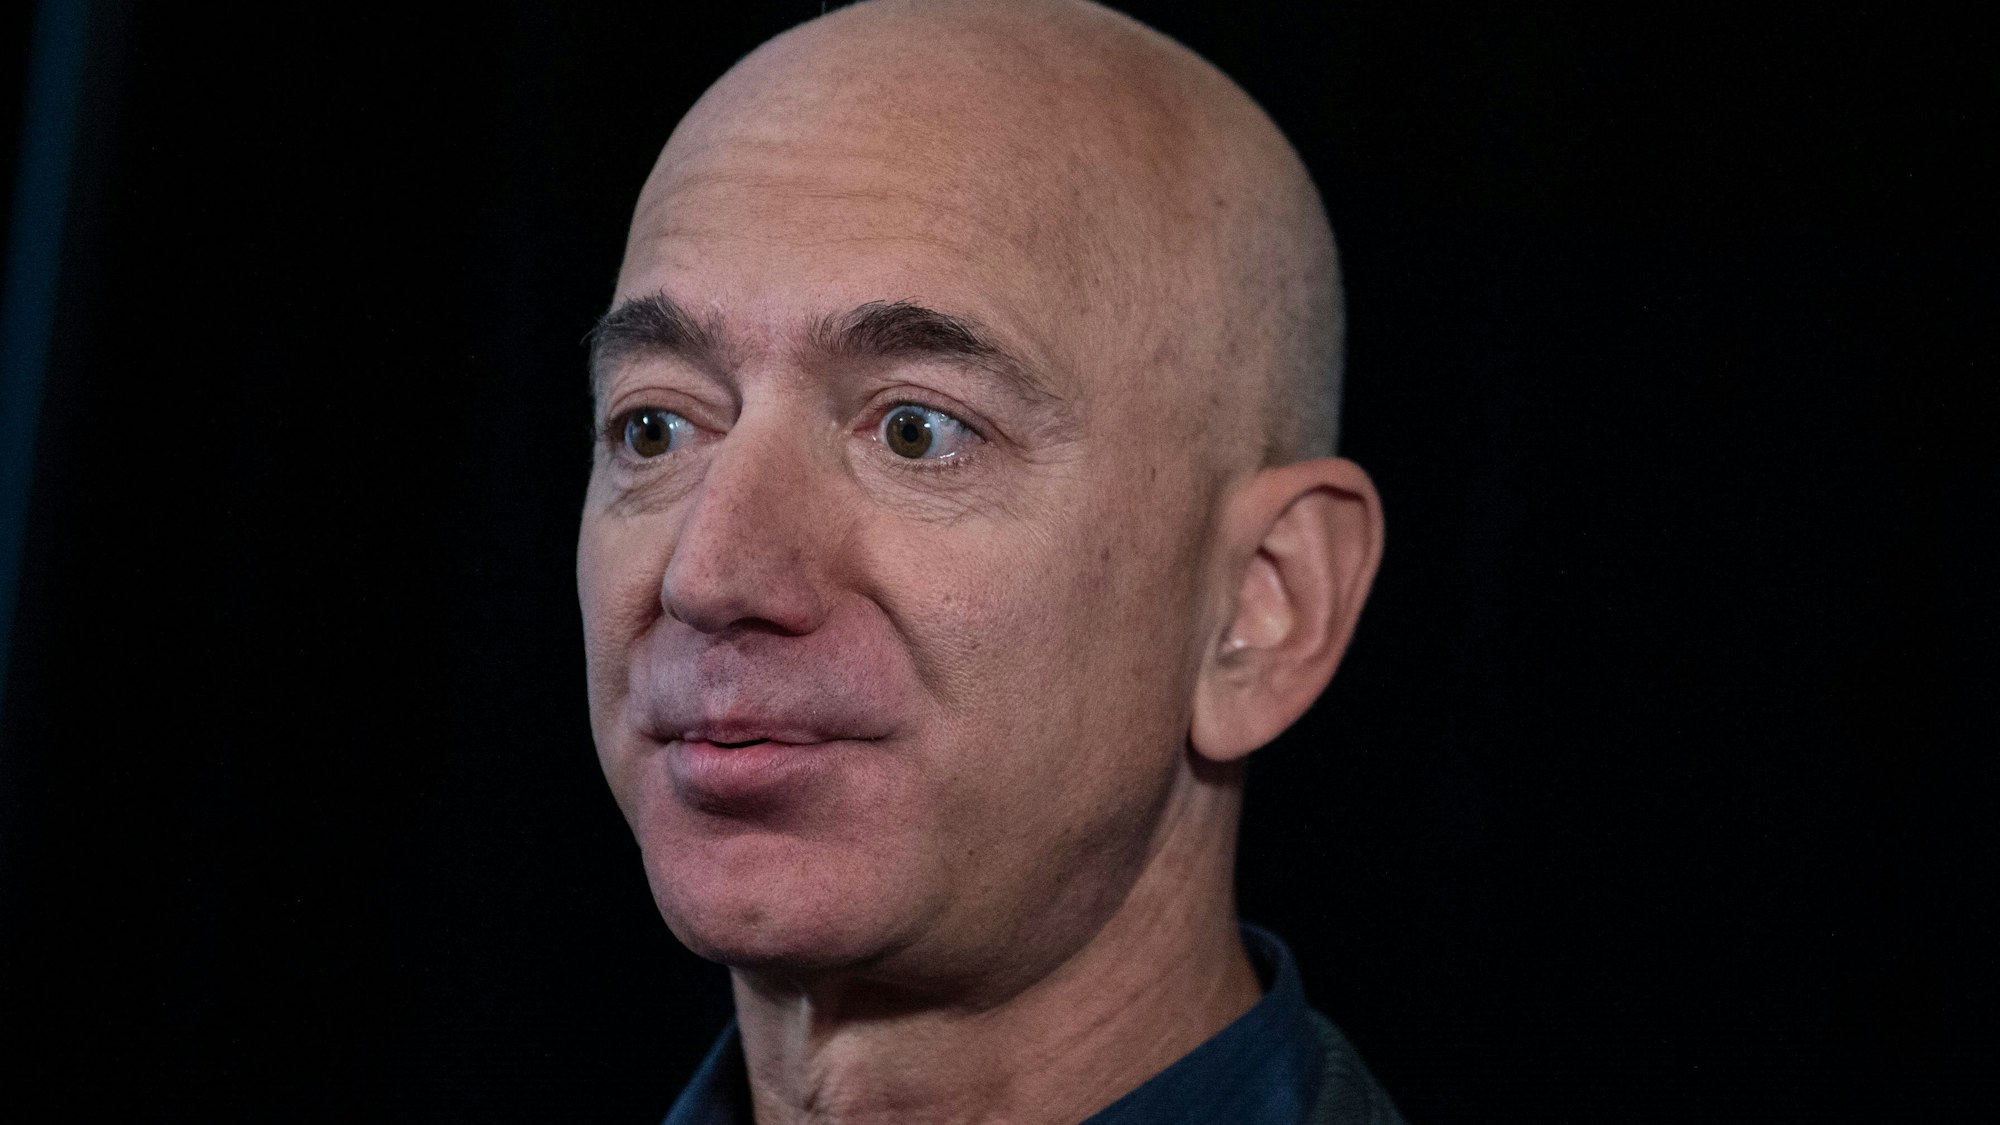 Jeff Bezos schaut nachdenklich. Er möchte einen Großteil seines Vermögens spenden, weiß aber noch nicht, wohin das Geld fließen soll.